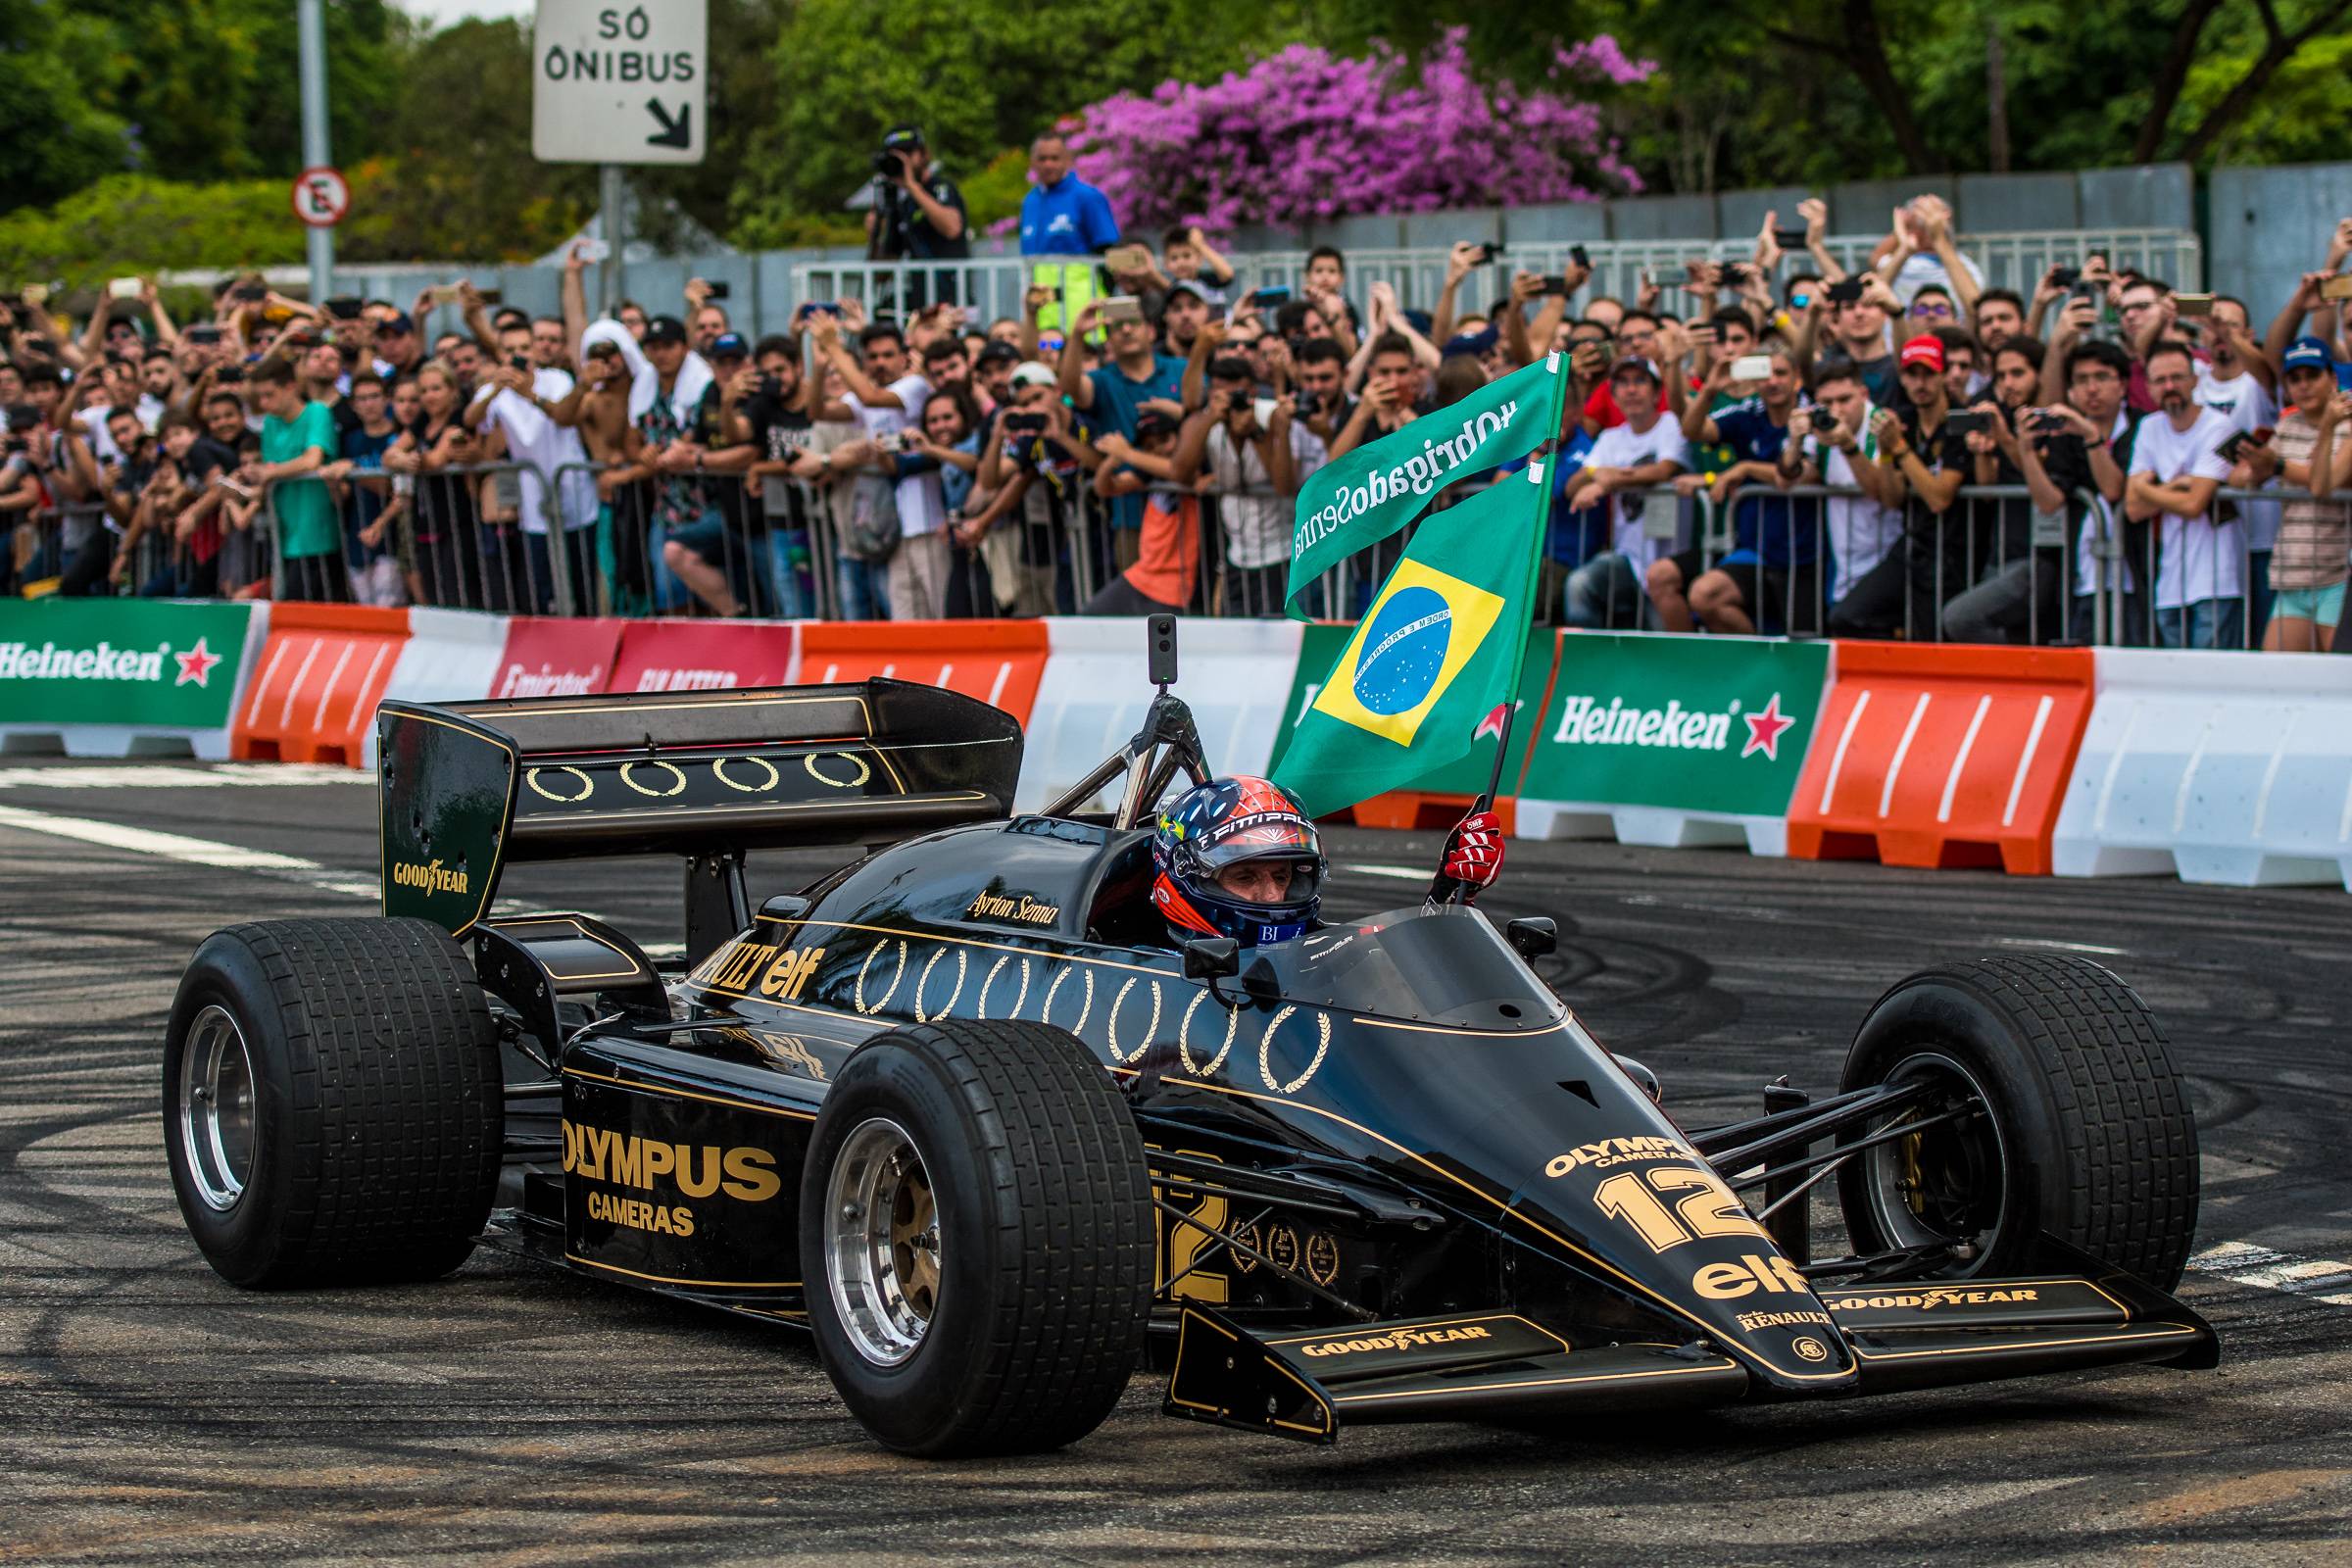 Emmerson Fitipaldi en el homenaje realizado a Ayrton Senna en 2019, en Brasil. Créditos: www.ayrtonsenna.com.br